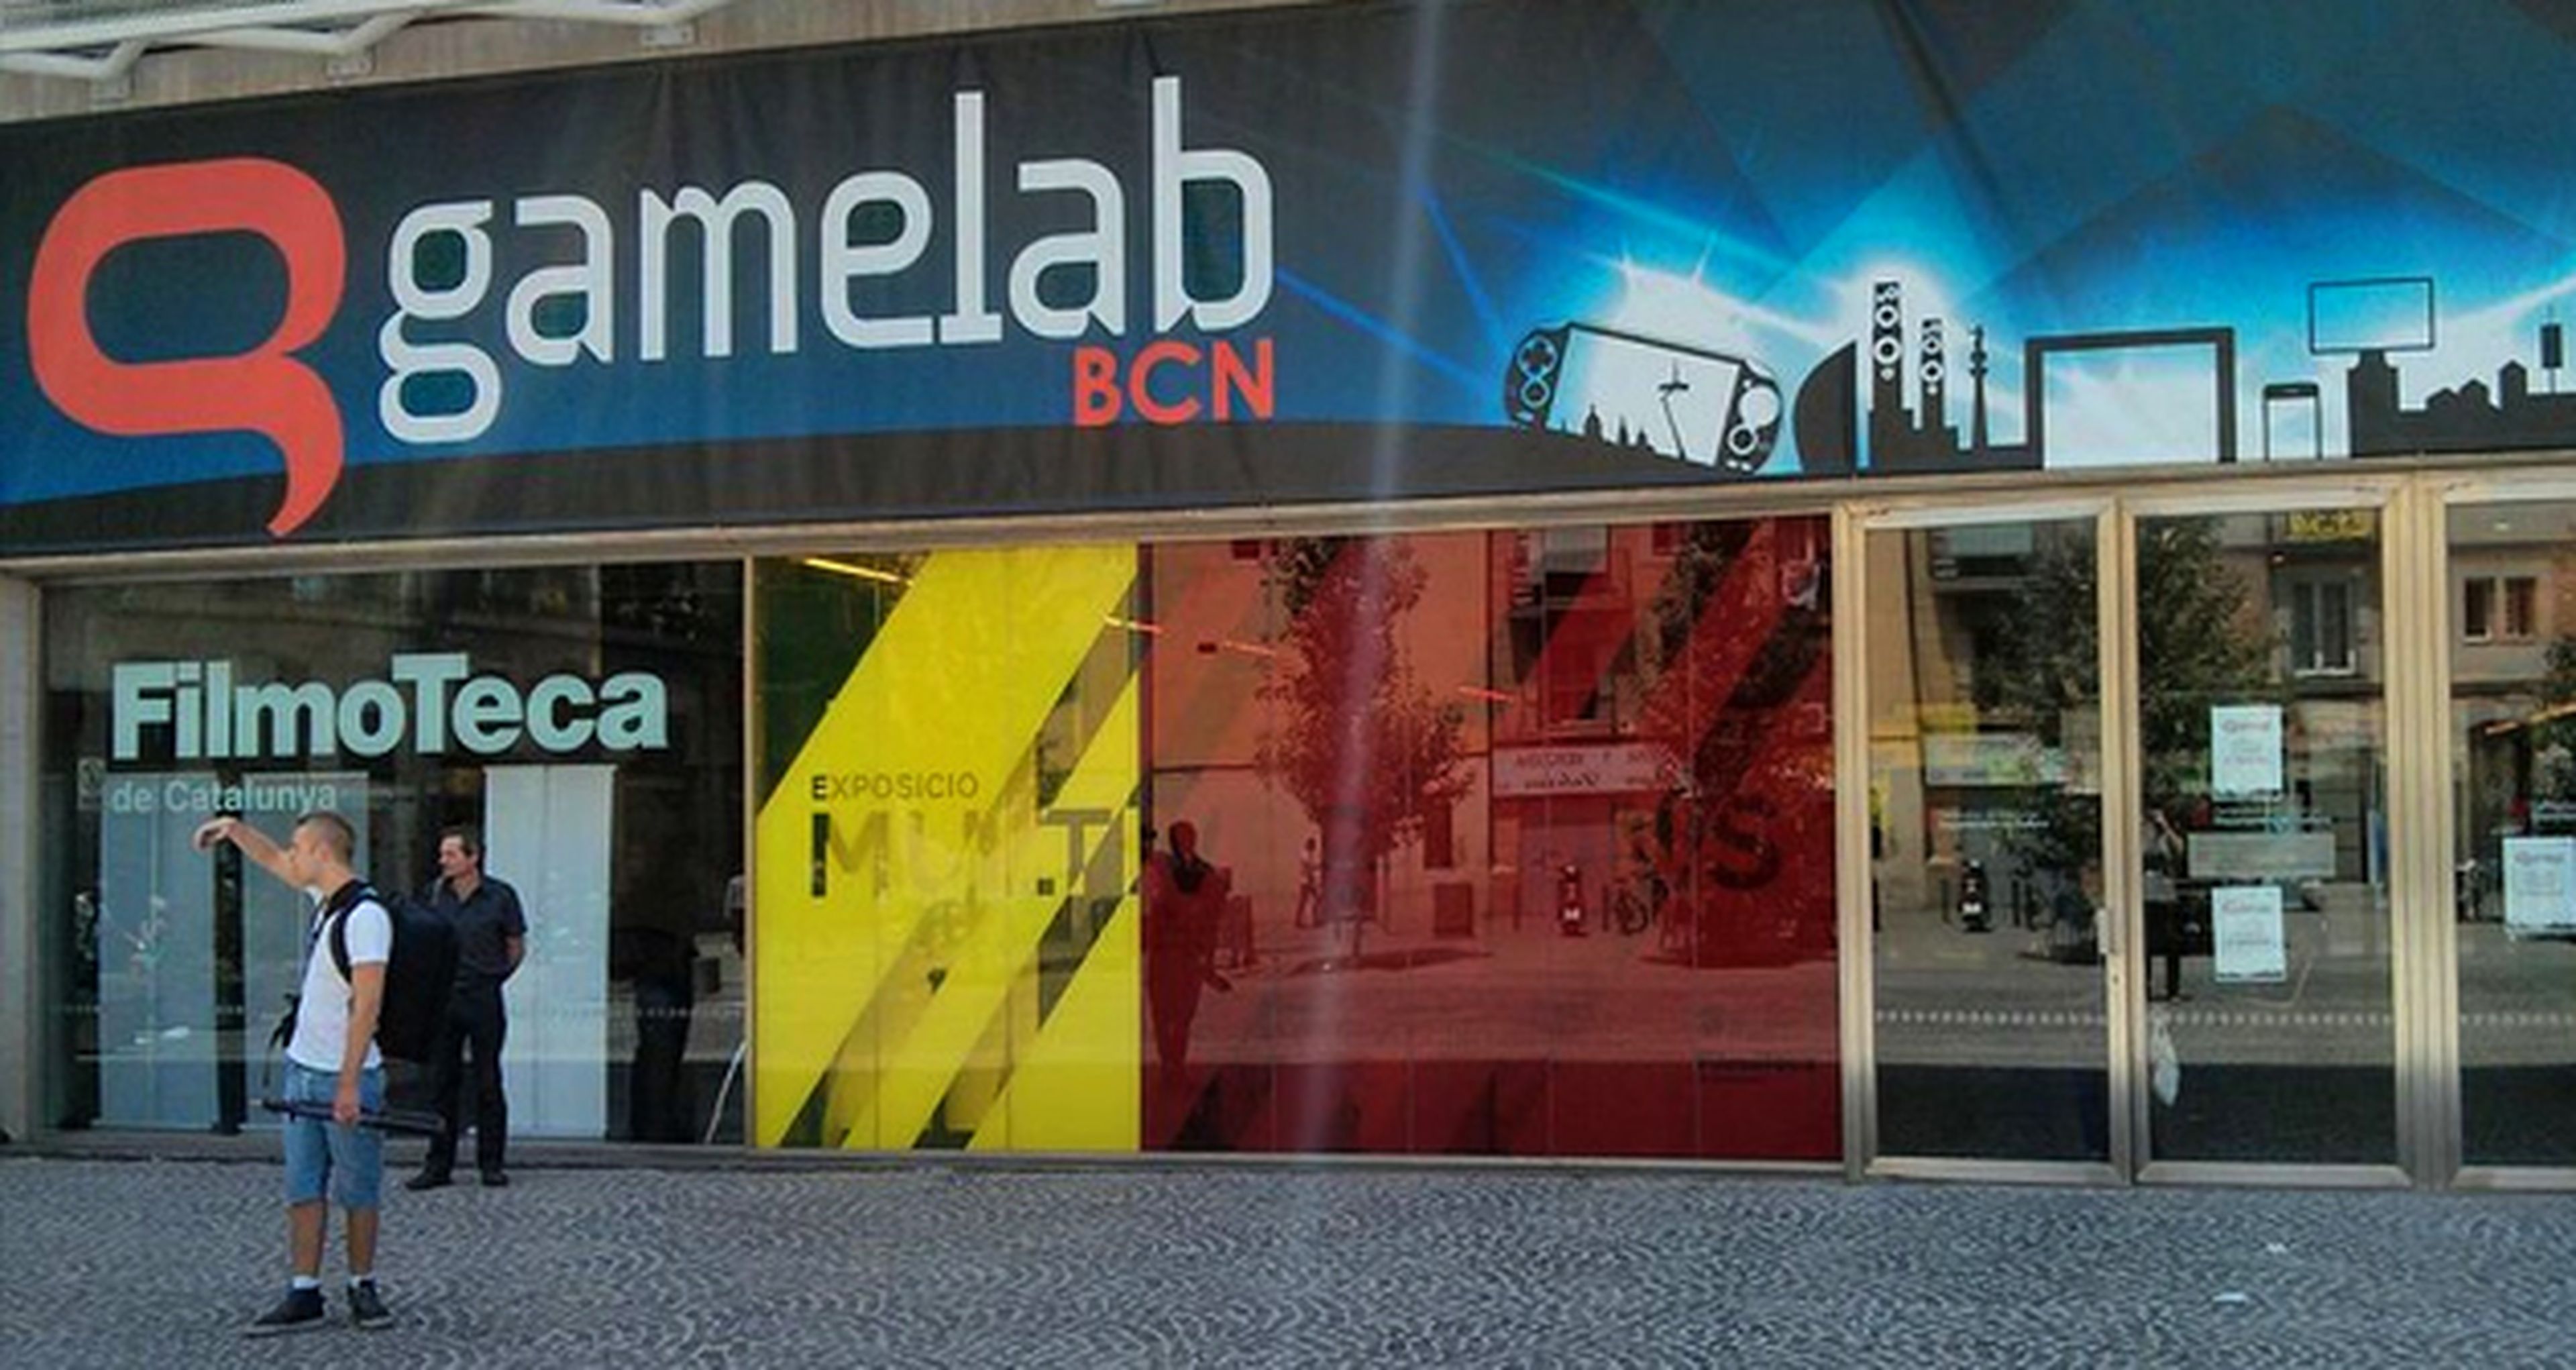 Gamelab 2013: Día 1